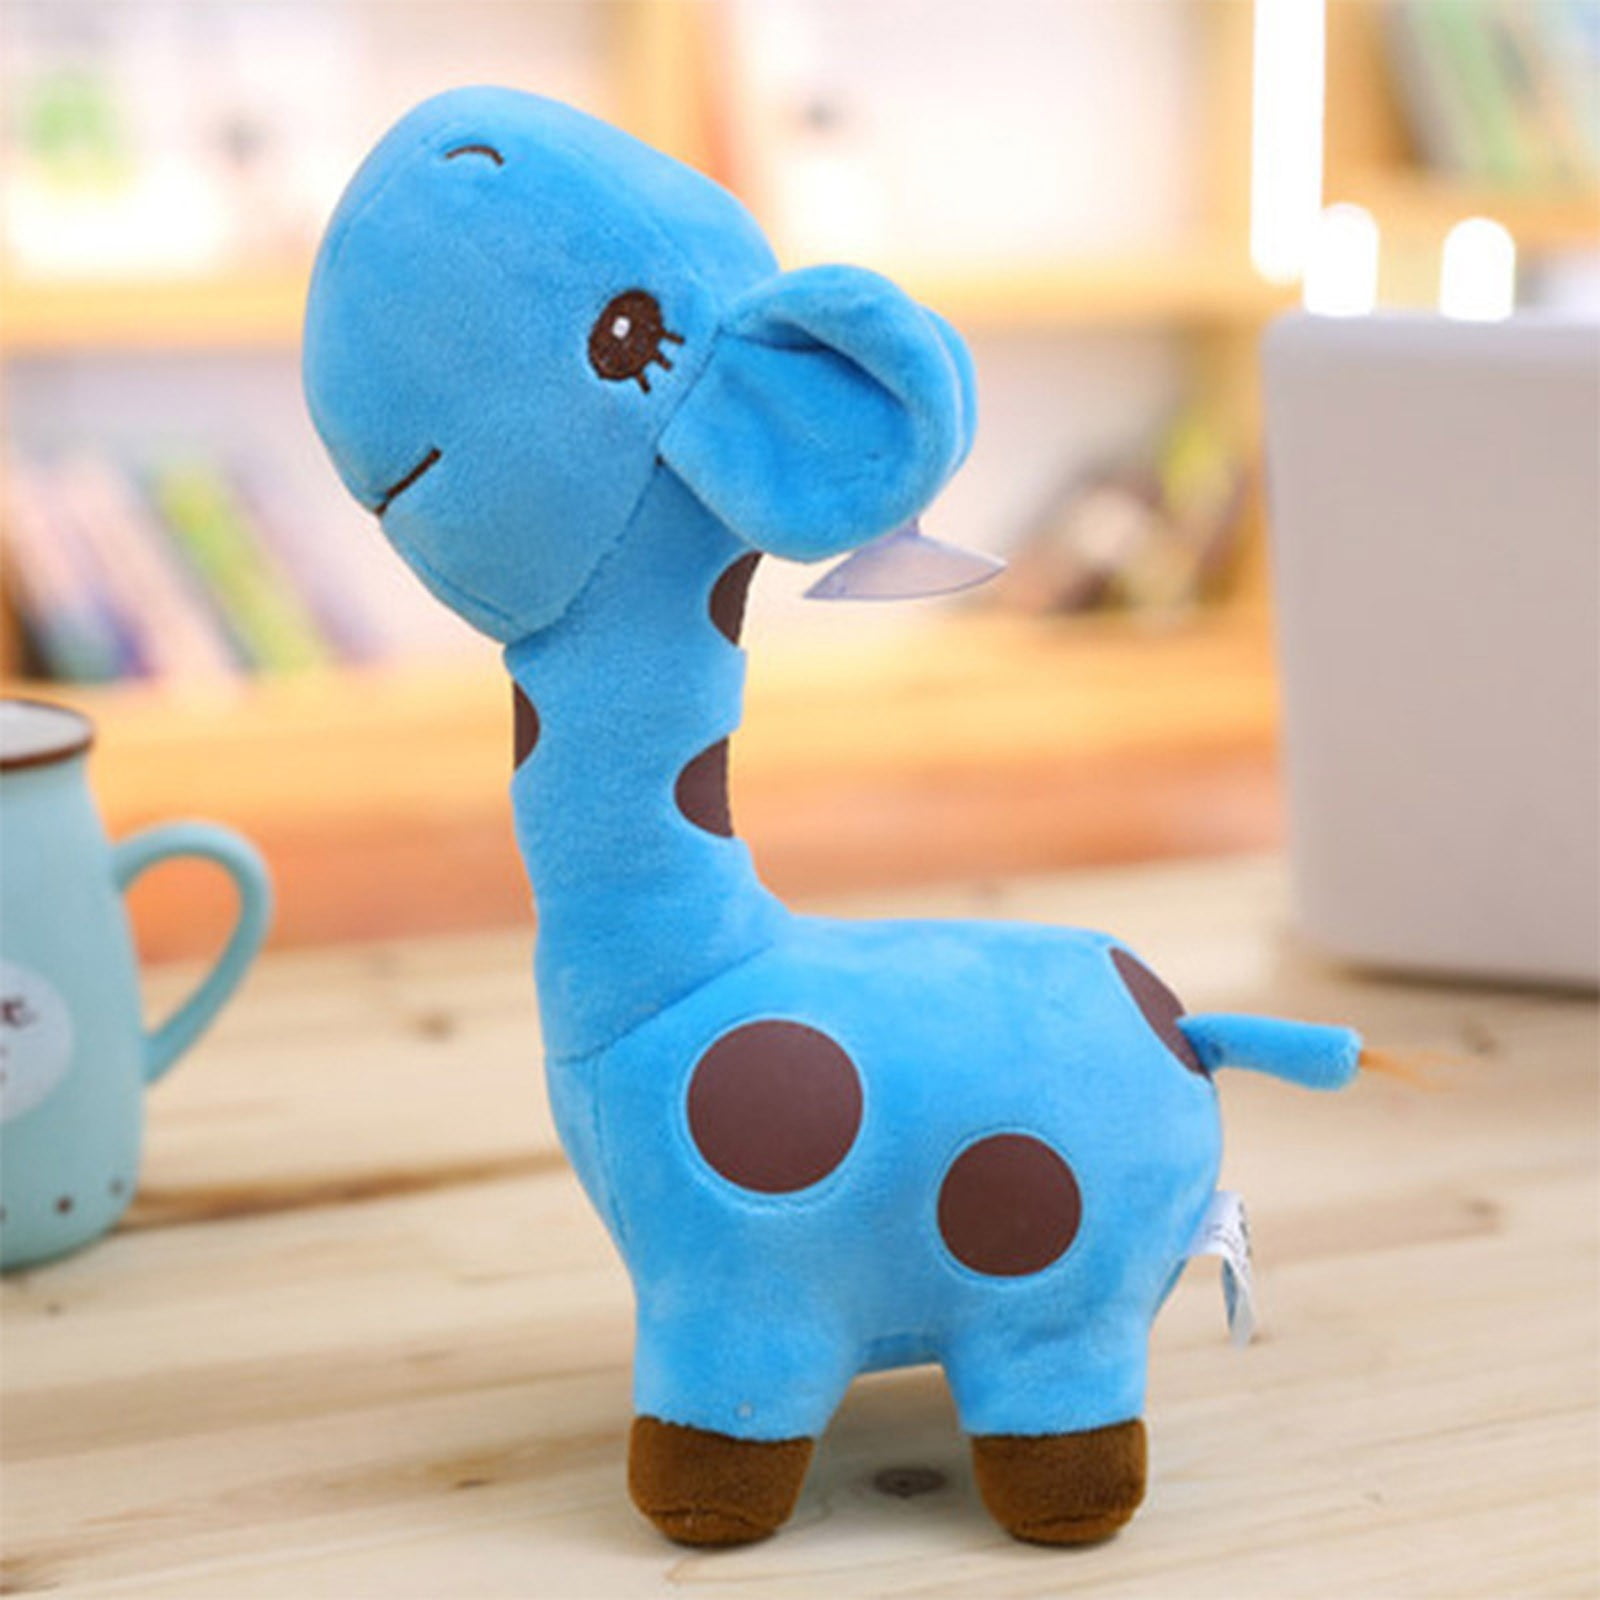 High Quality Soft Cute Stuffed Animal Dolls Plush Giraffe Doll Baby Kids Toy 